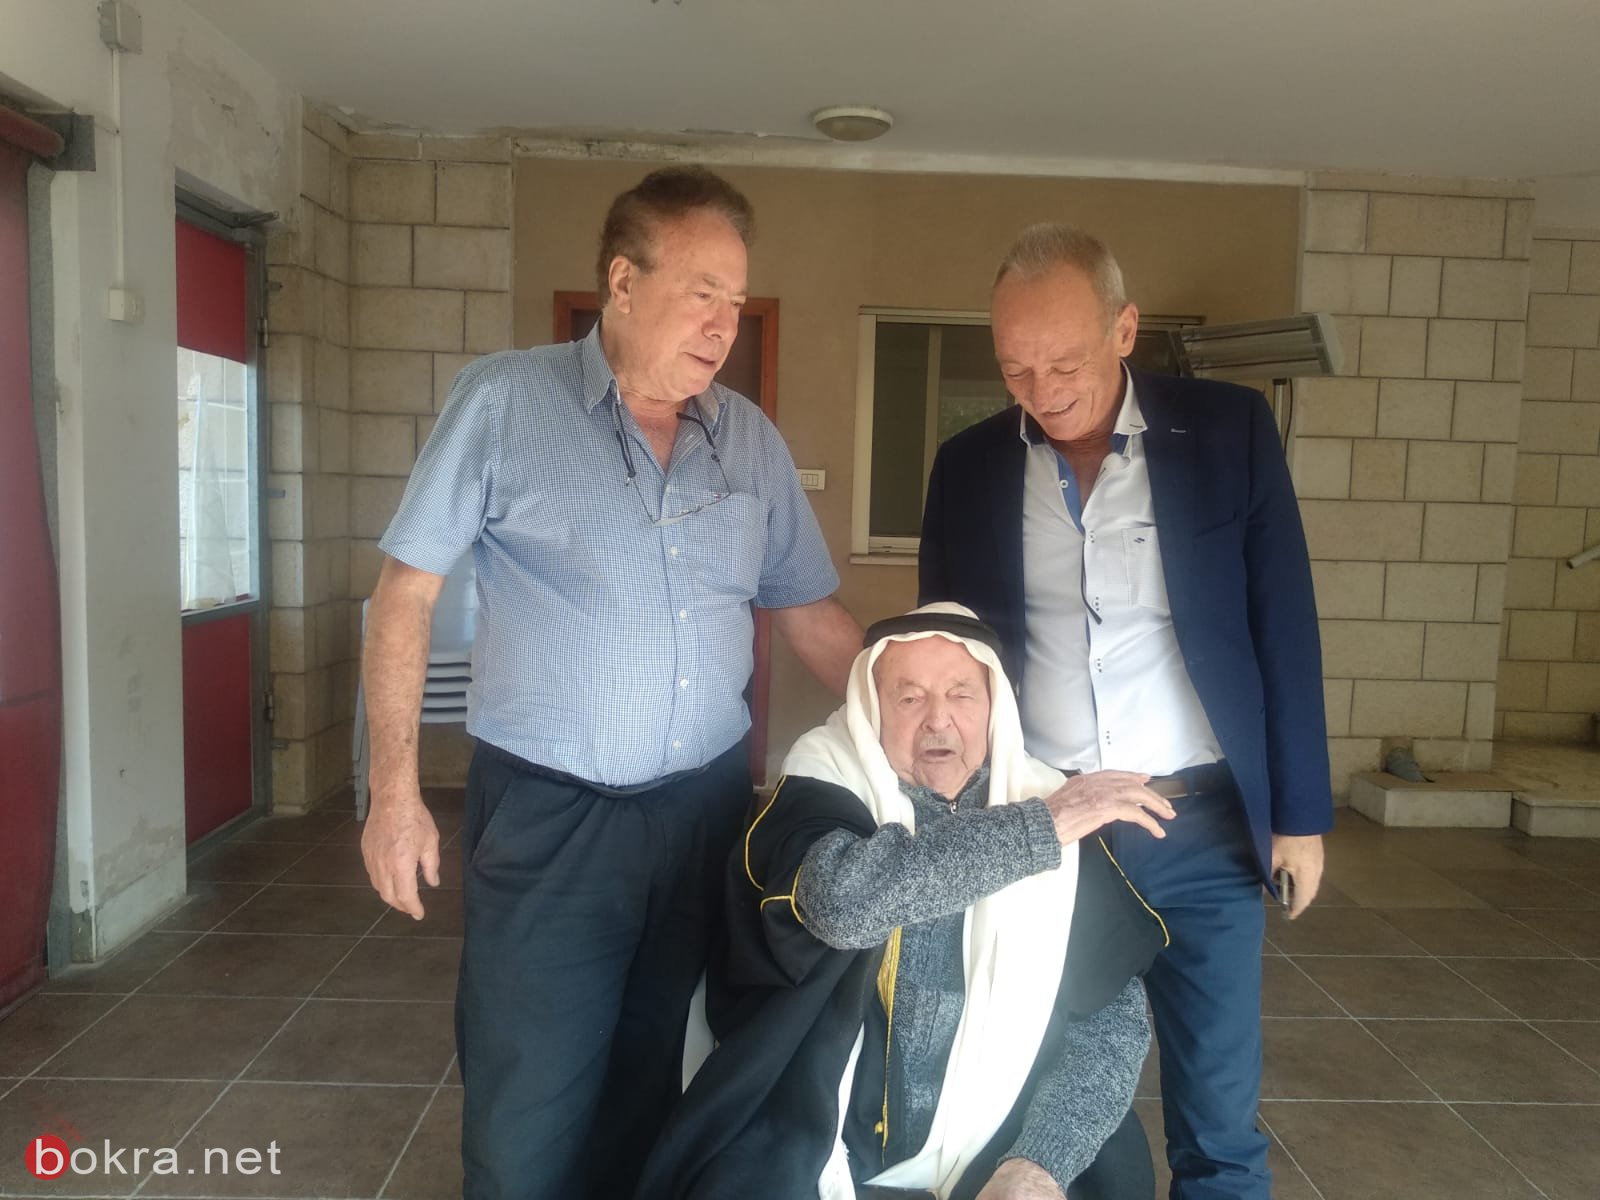 الحاج أحمد أبو عيّاش (102 عامًا) من عيلوط، يدلي بصوته ويدعو بالتصويت للمشتركة-1